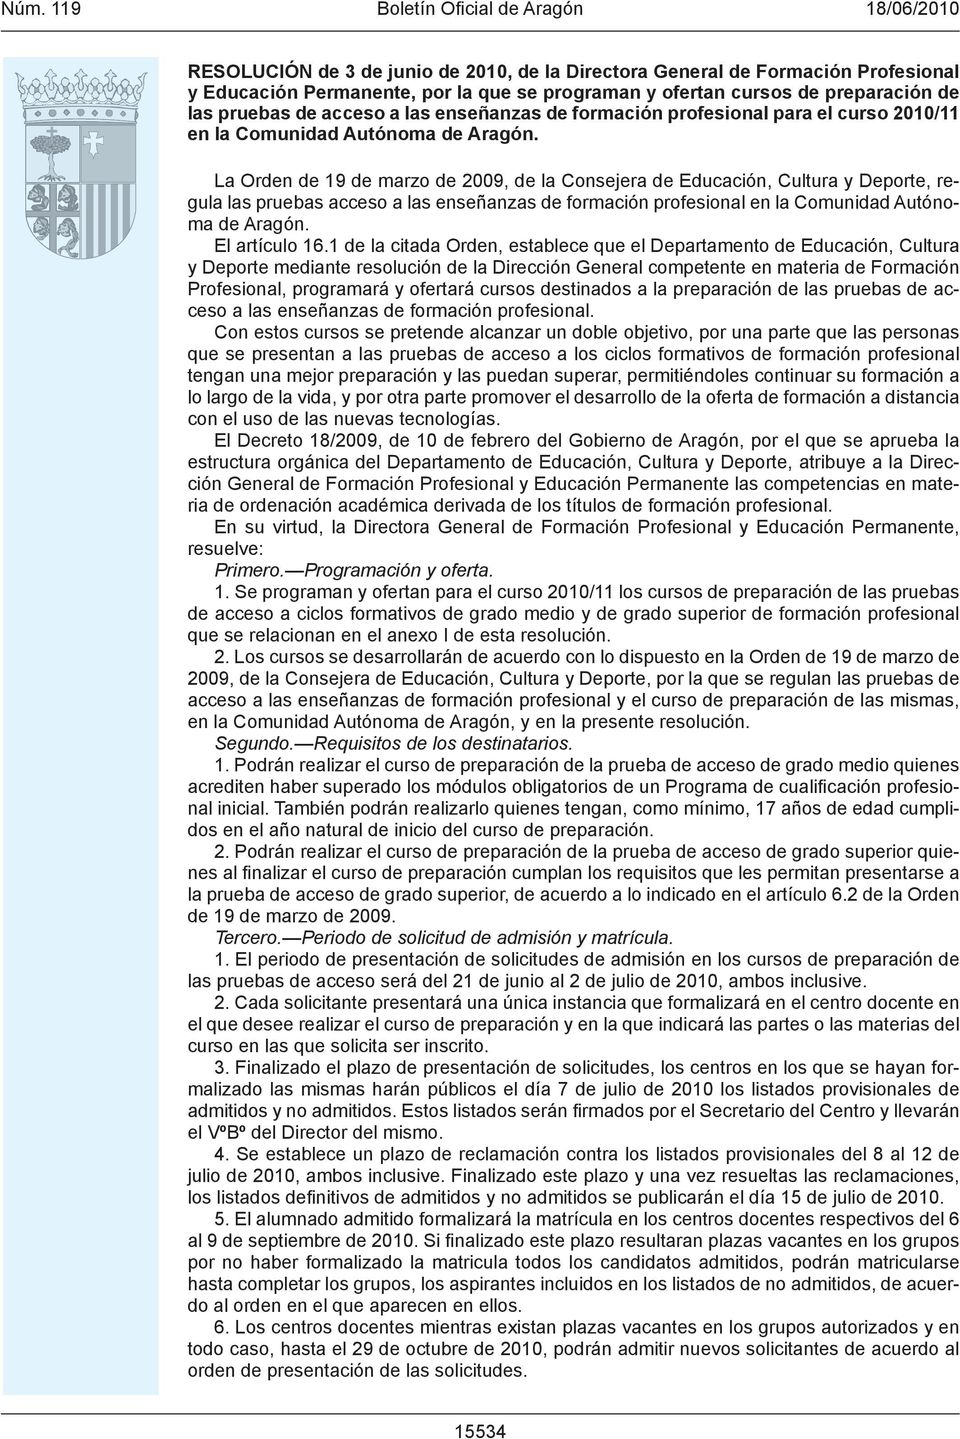 La Orden de 19 de marzo de 2009, de la Consejera de Educación, Cultura y Deporte, regula las pruebas acceso a las enseñanzas de formación profesional en la Comunidad Autónoma de Aragón.